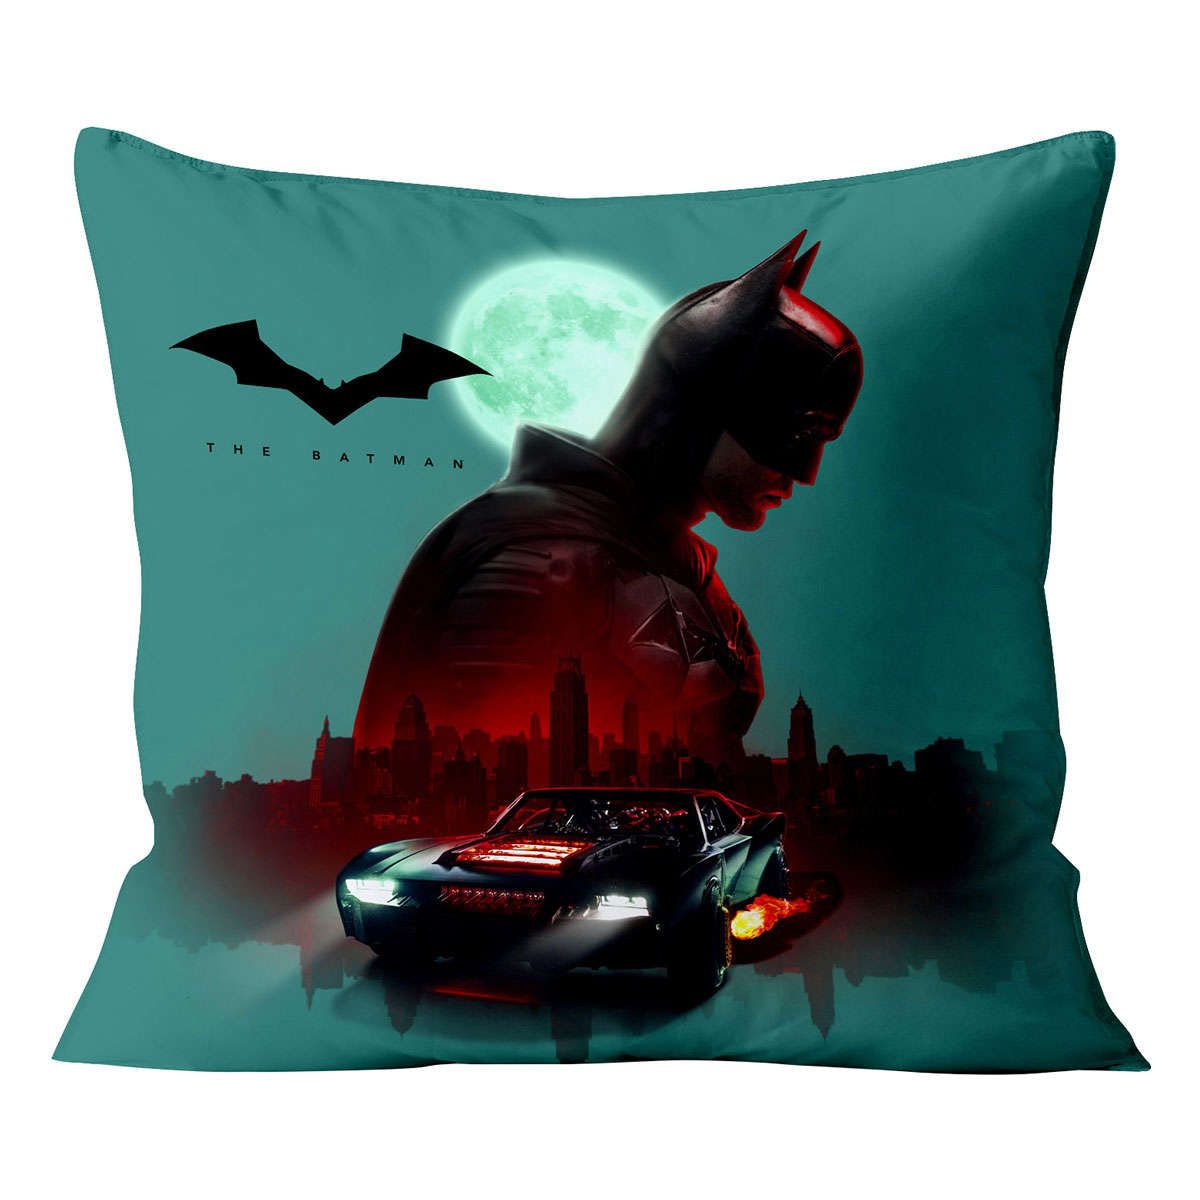 Διακοσμητικό μαξιλάρι The Batman Art 6185 Εμπριμέ beauty home